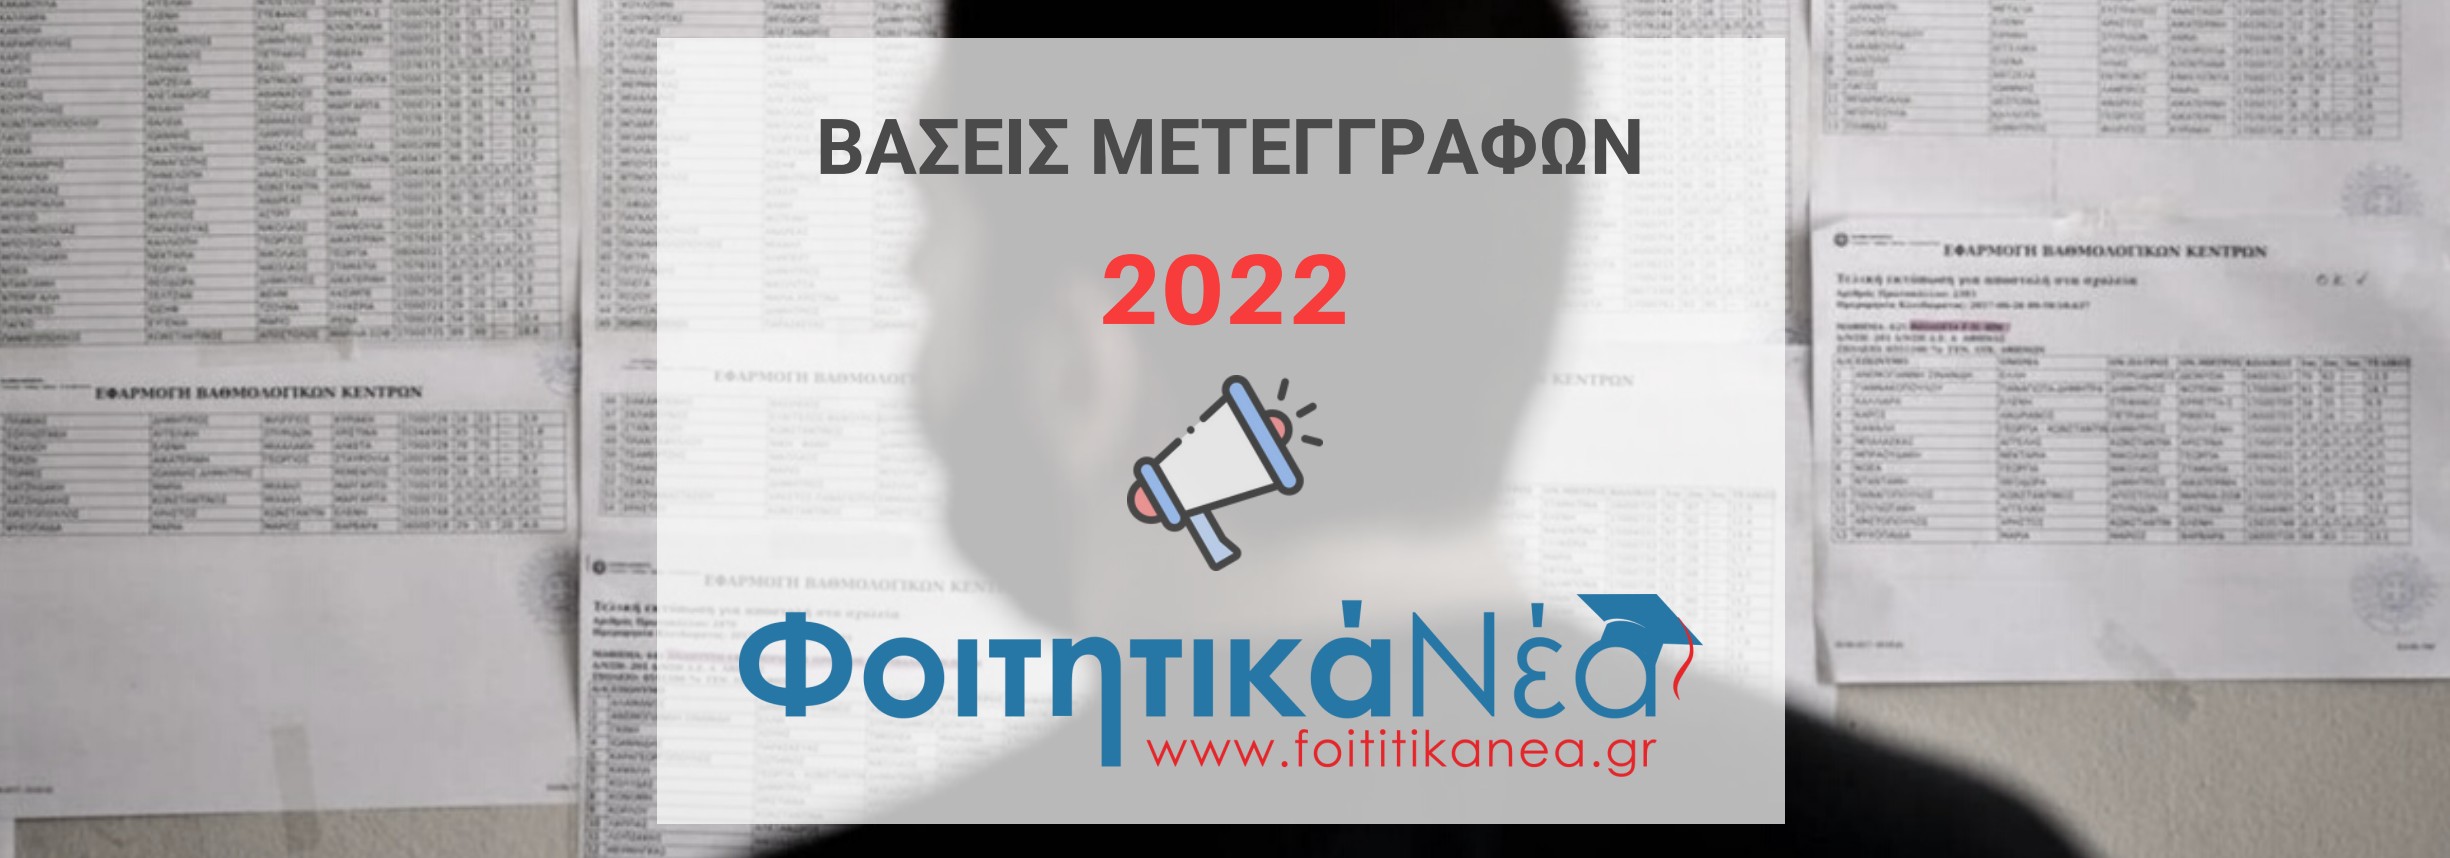 ΒΑΣΕΙΣ ΜΕΤΕΓΓΡΑΦΩΝ 2022